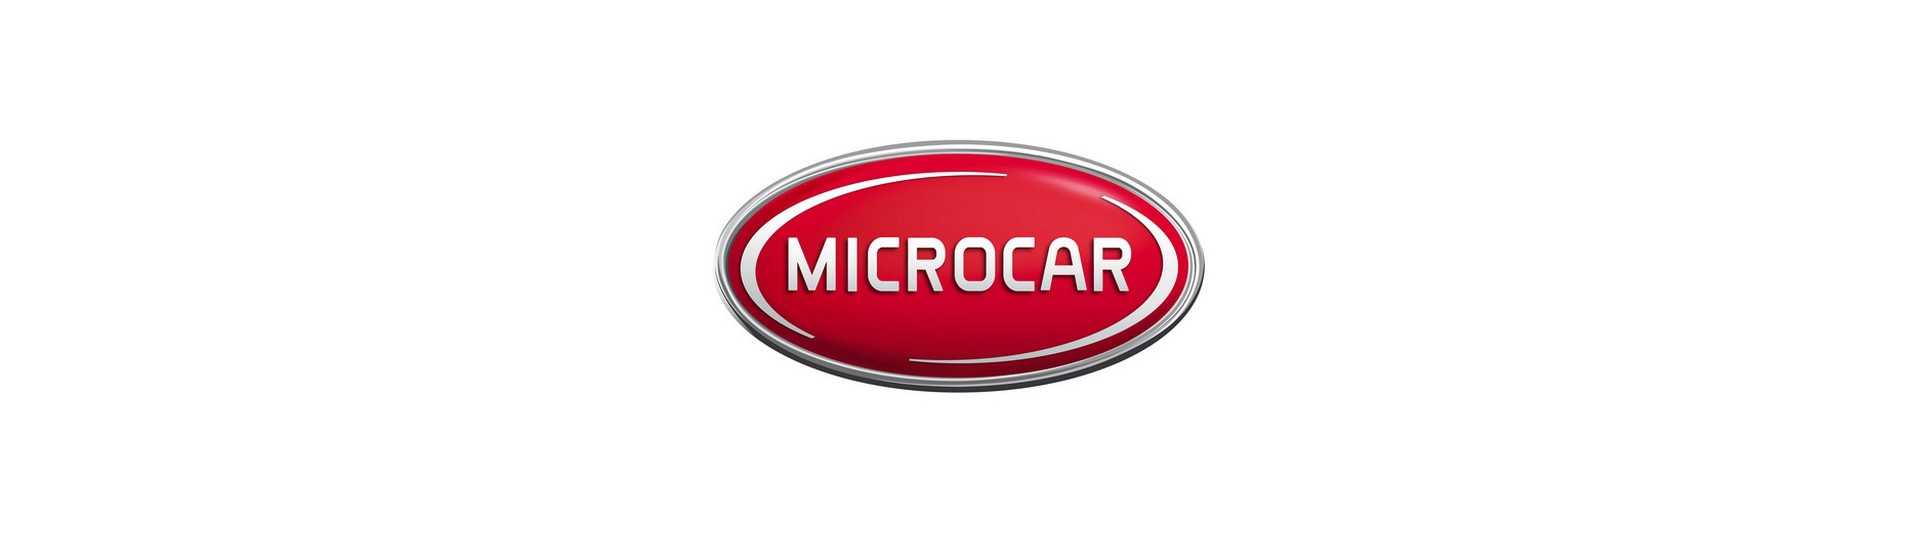 Clignotant au meilleur prix pour voiture sans permis Microcar